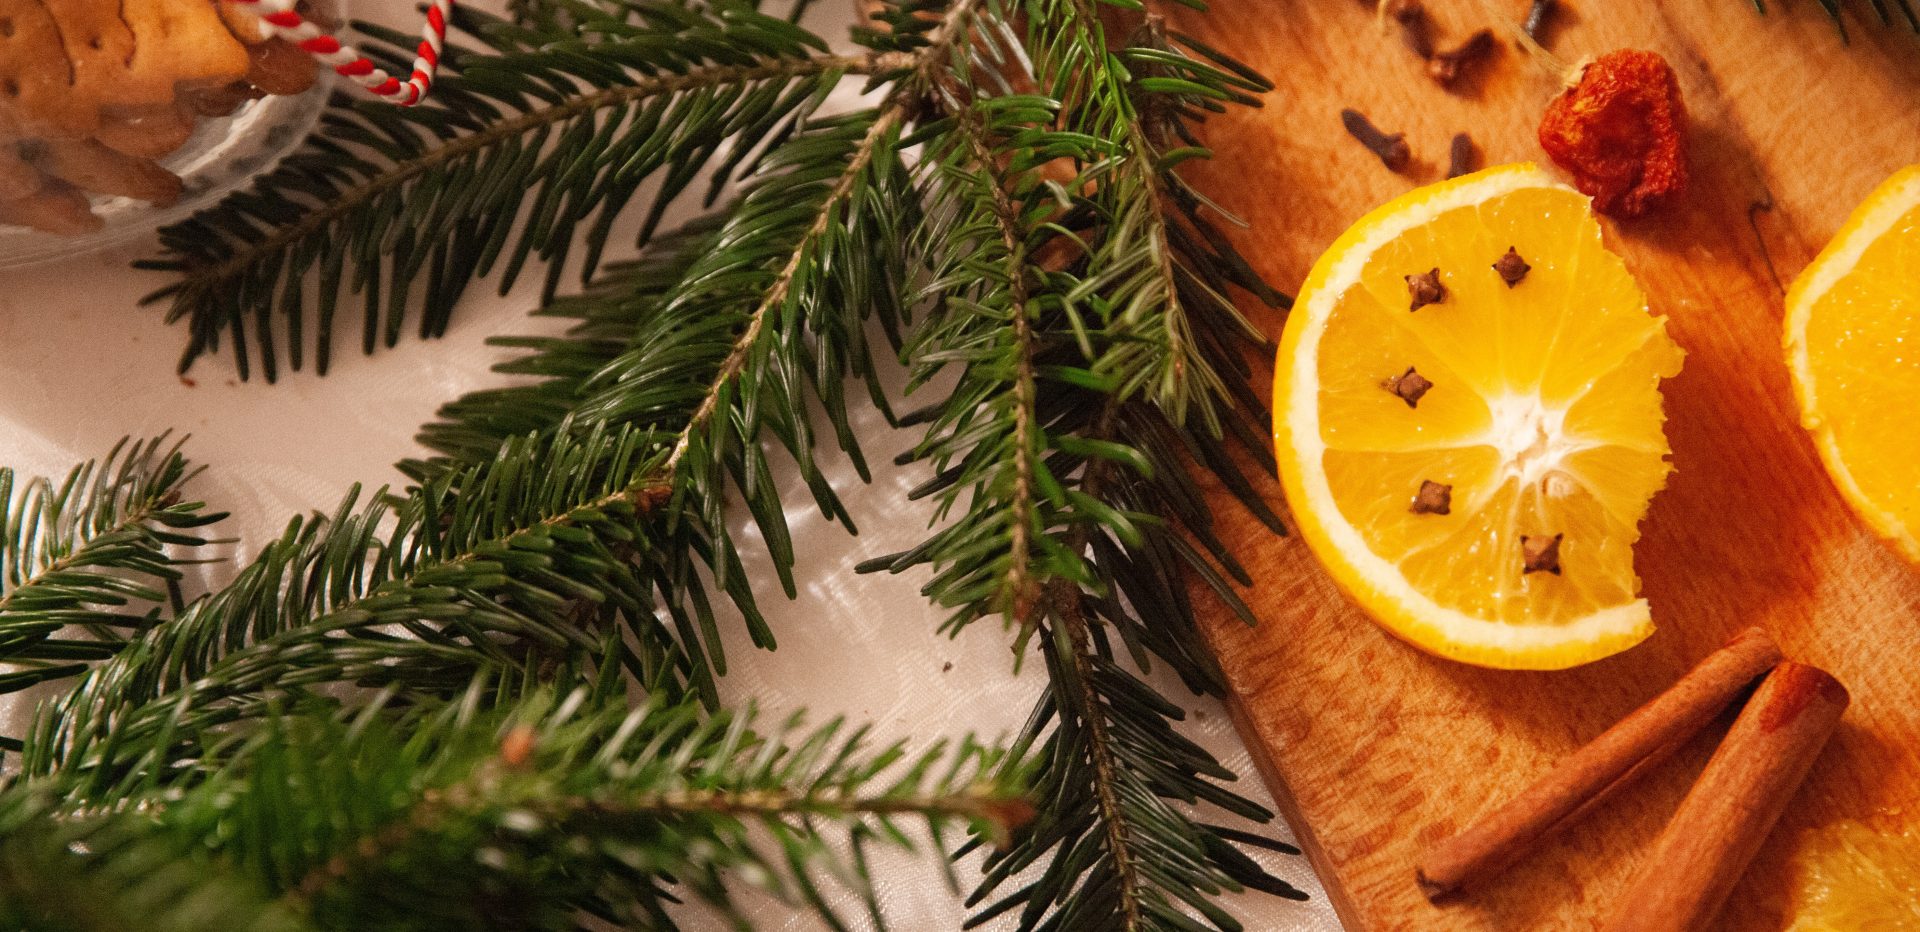 Jule-relaterede sager som gran, appelsiner, nellike og kanel.